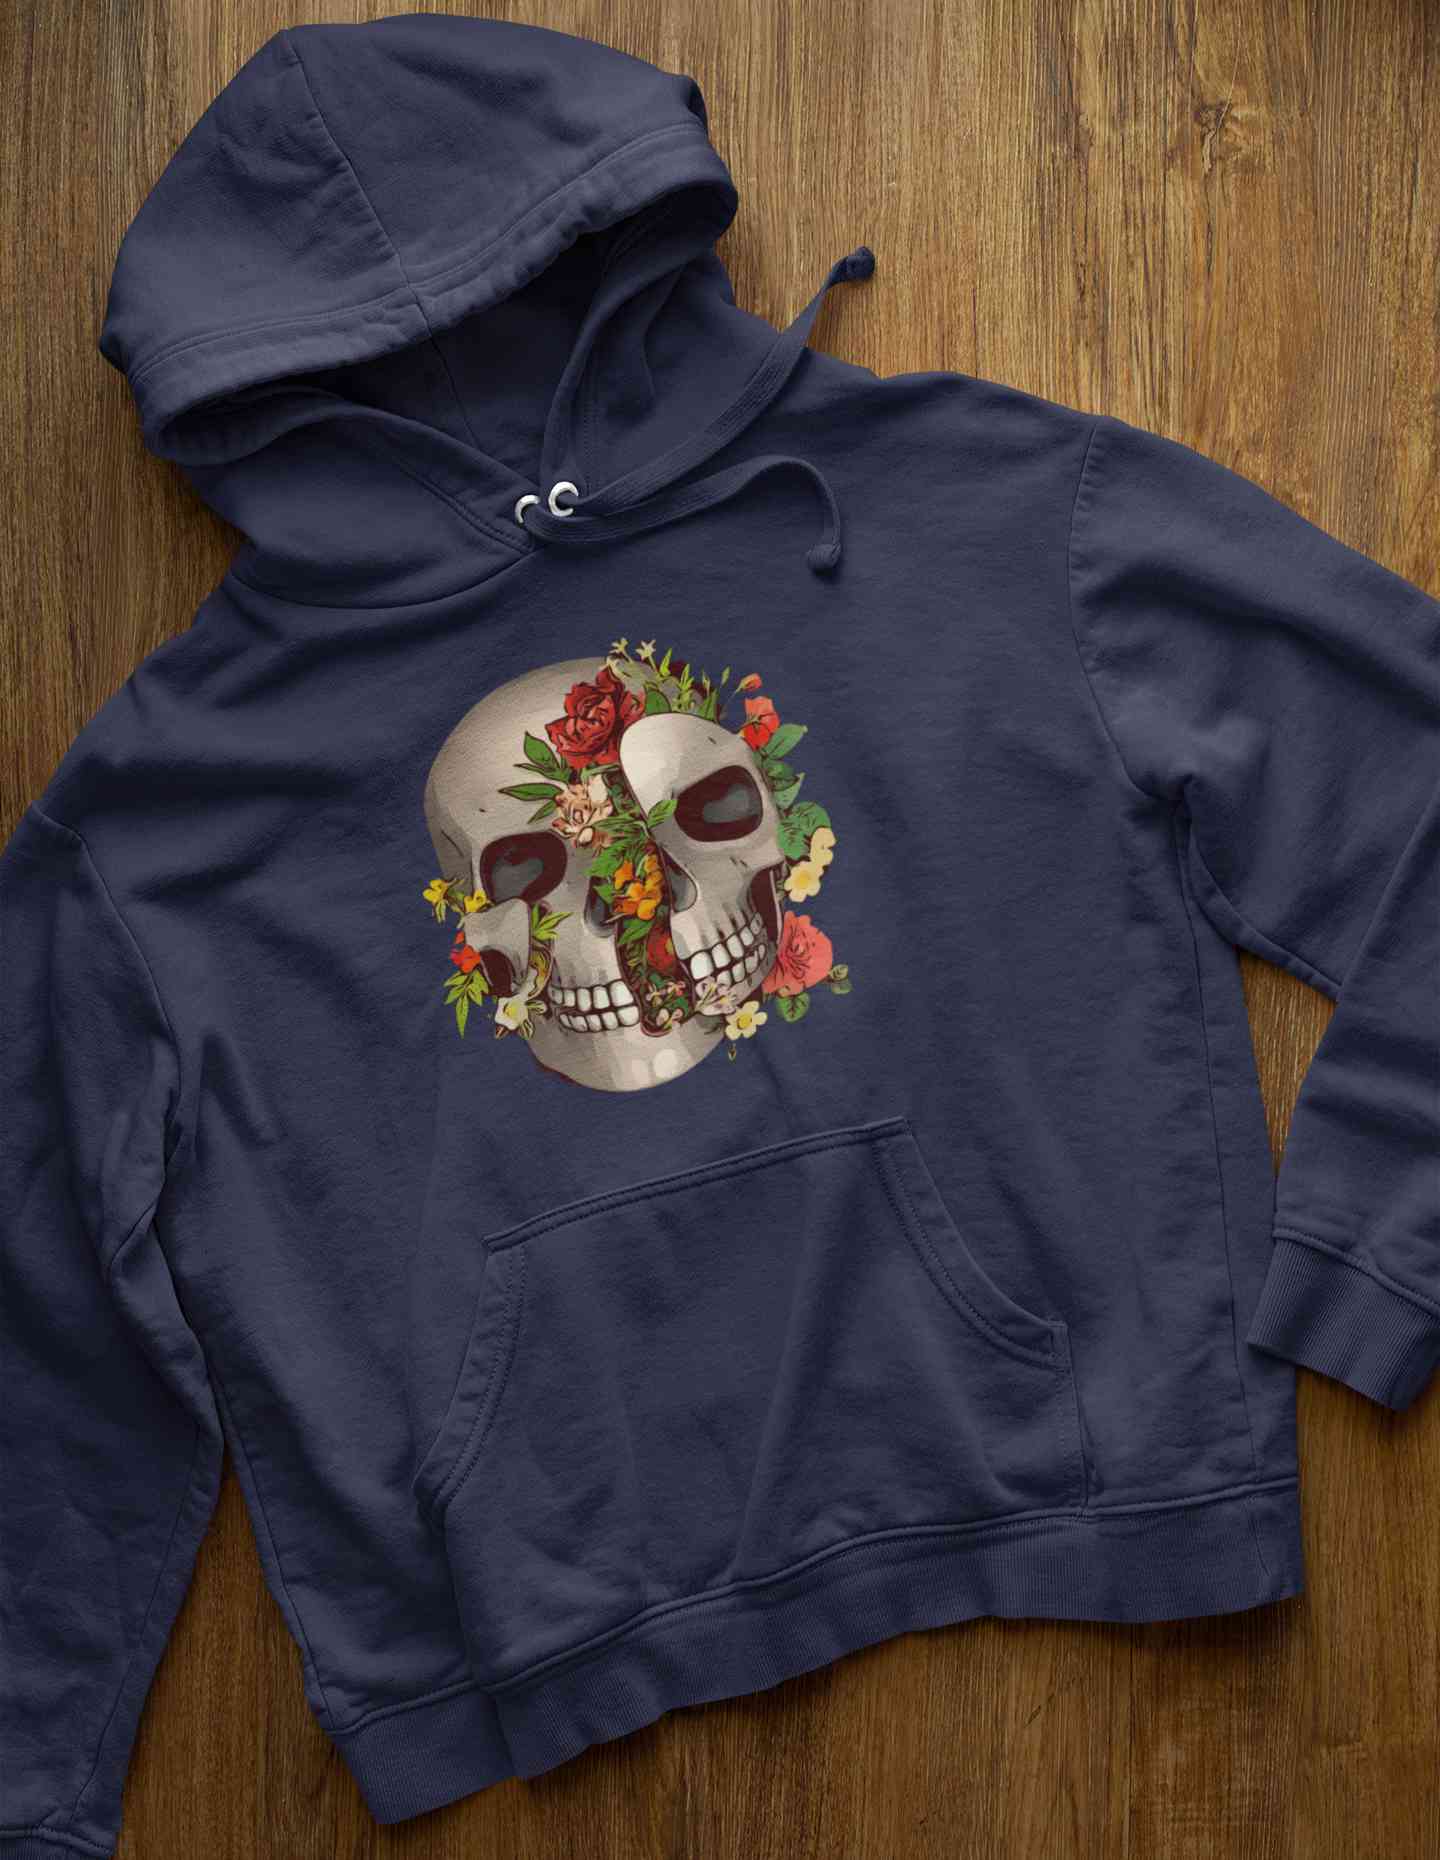 Floral And Skull Print Hoodies for Women-FunkyTeesClub